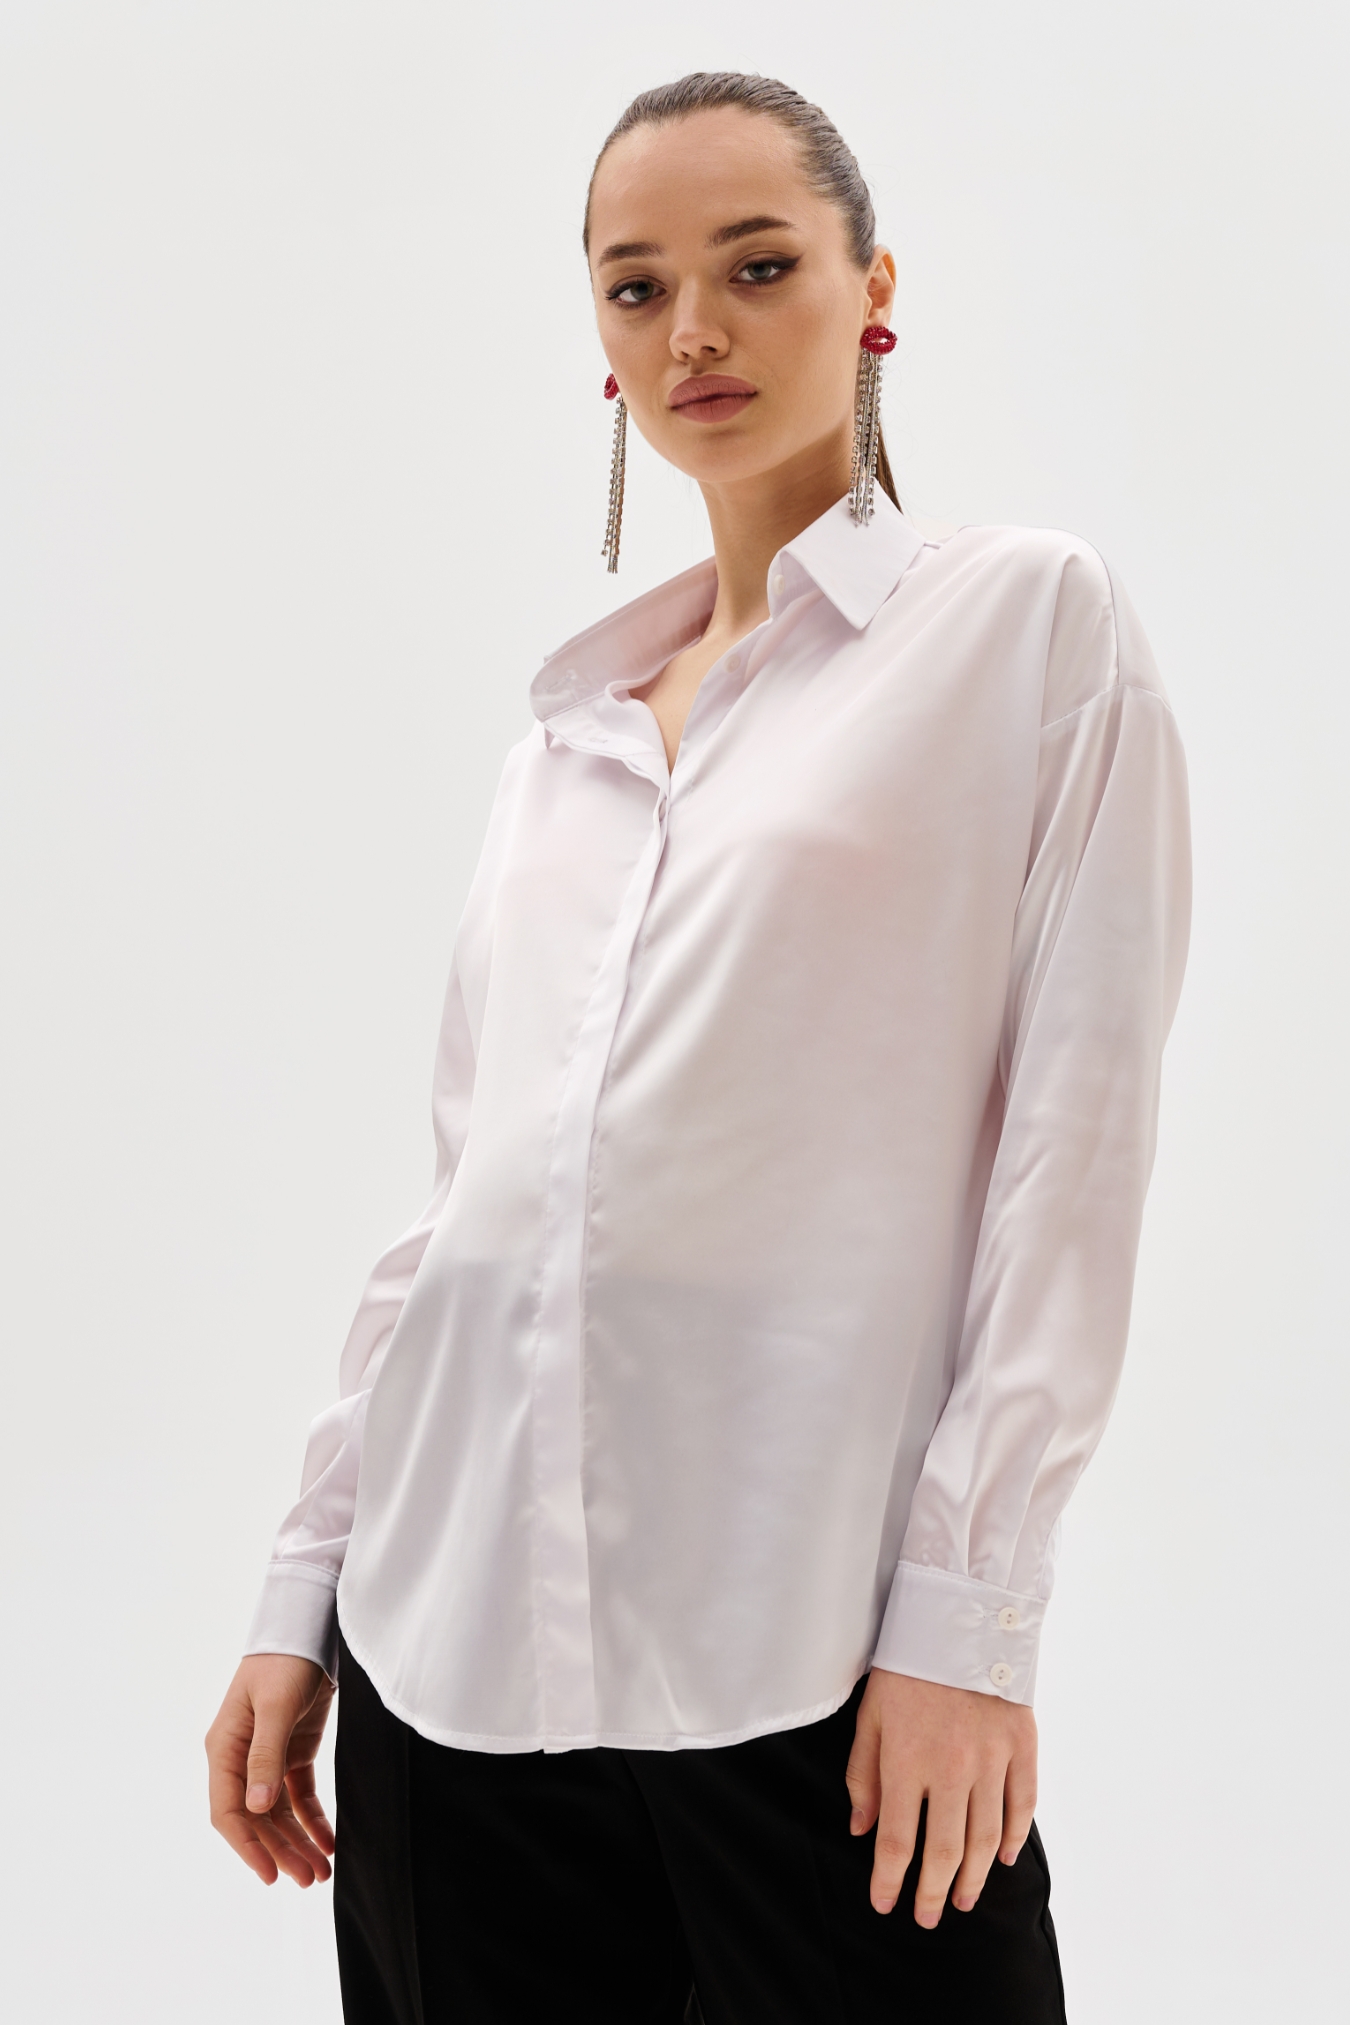 Блузка для беременных вечерняя и рубашка в офис